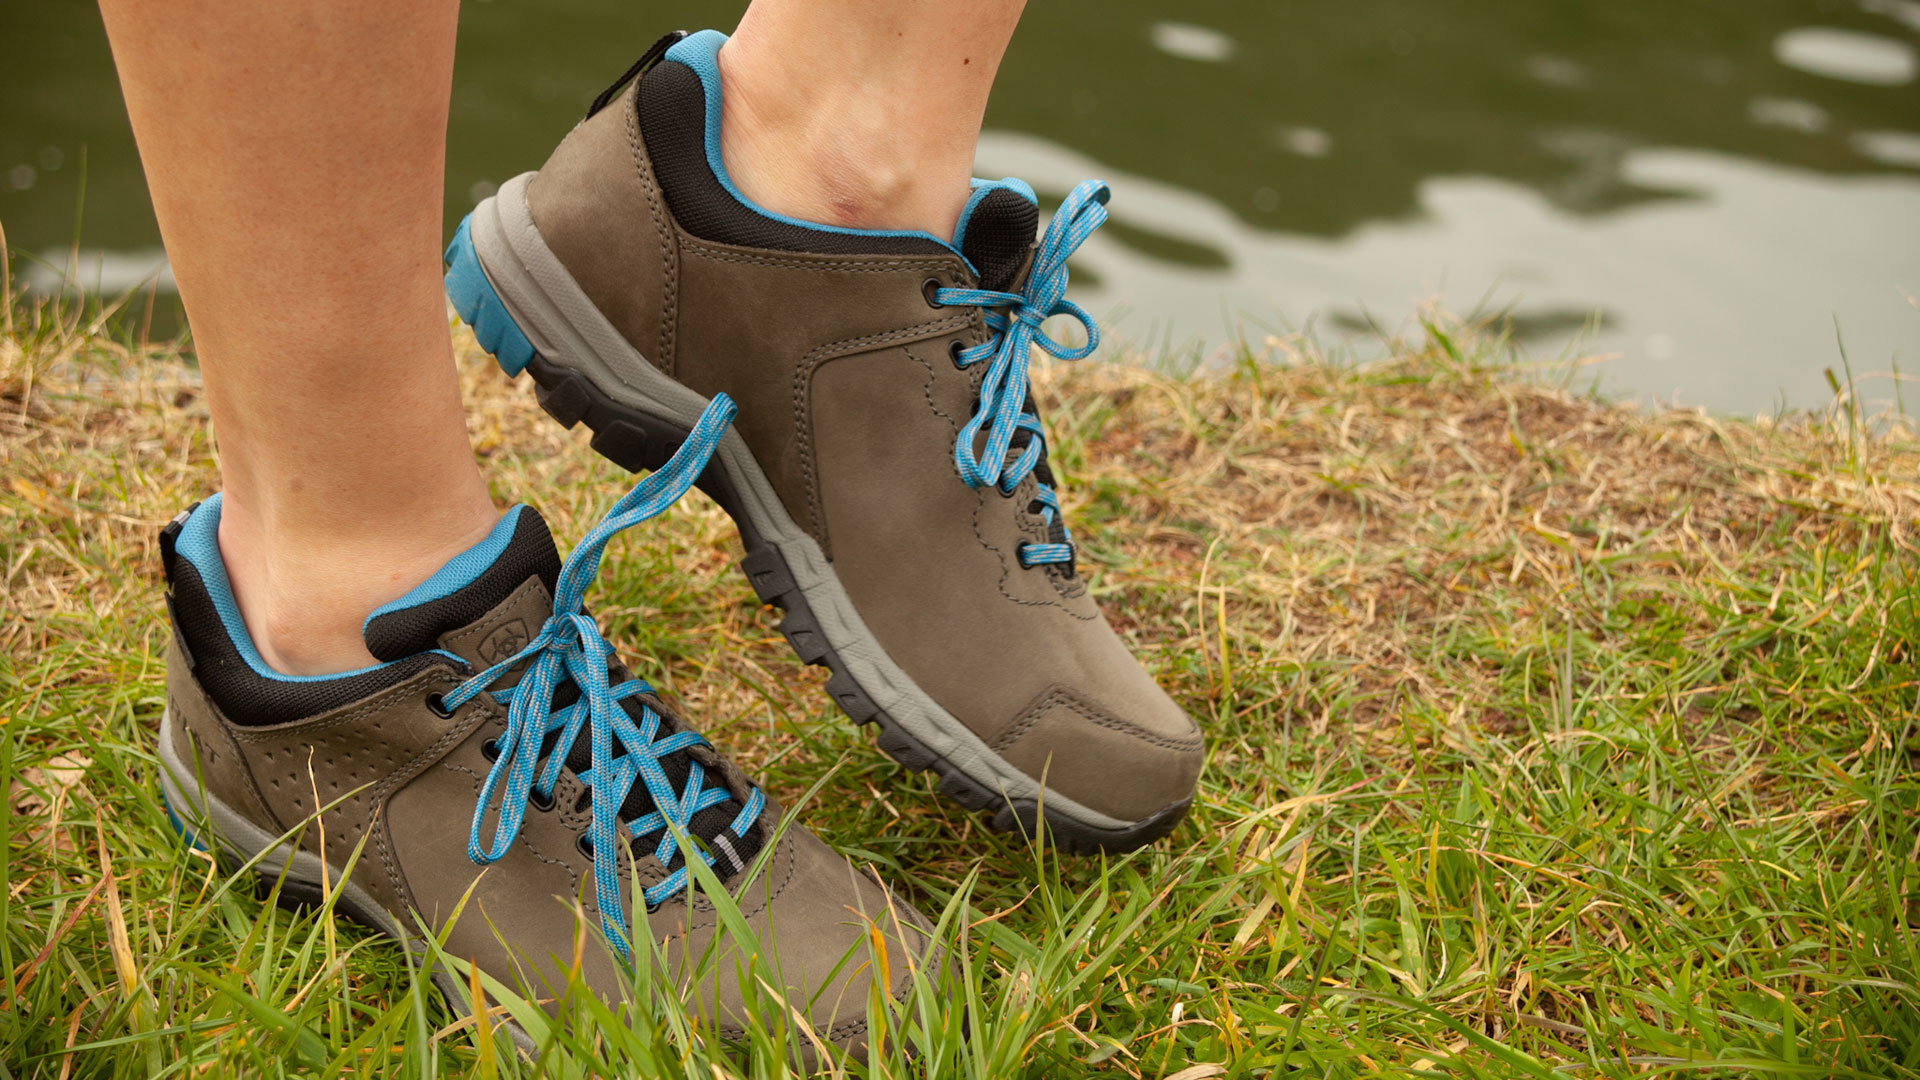 sensor Kelder Ziektecijfers Ariat Skyline Low waterproof walking shoe review | T3